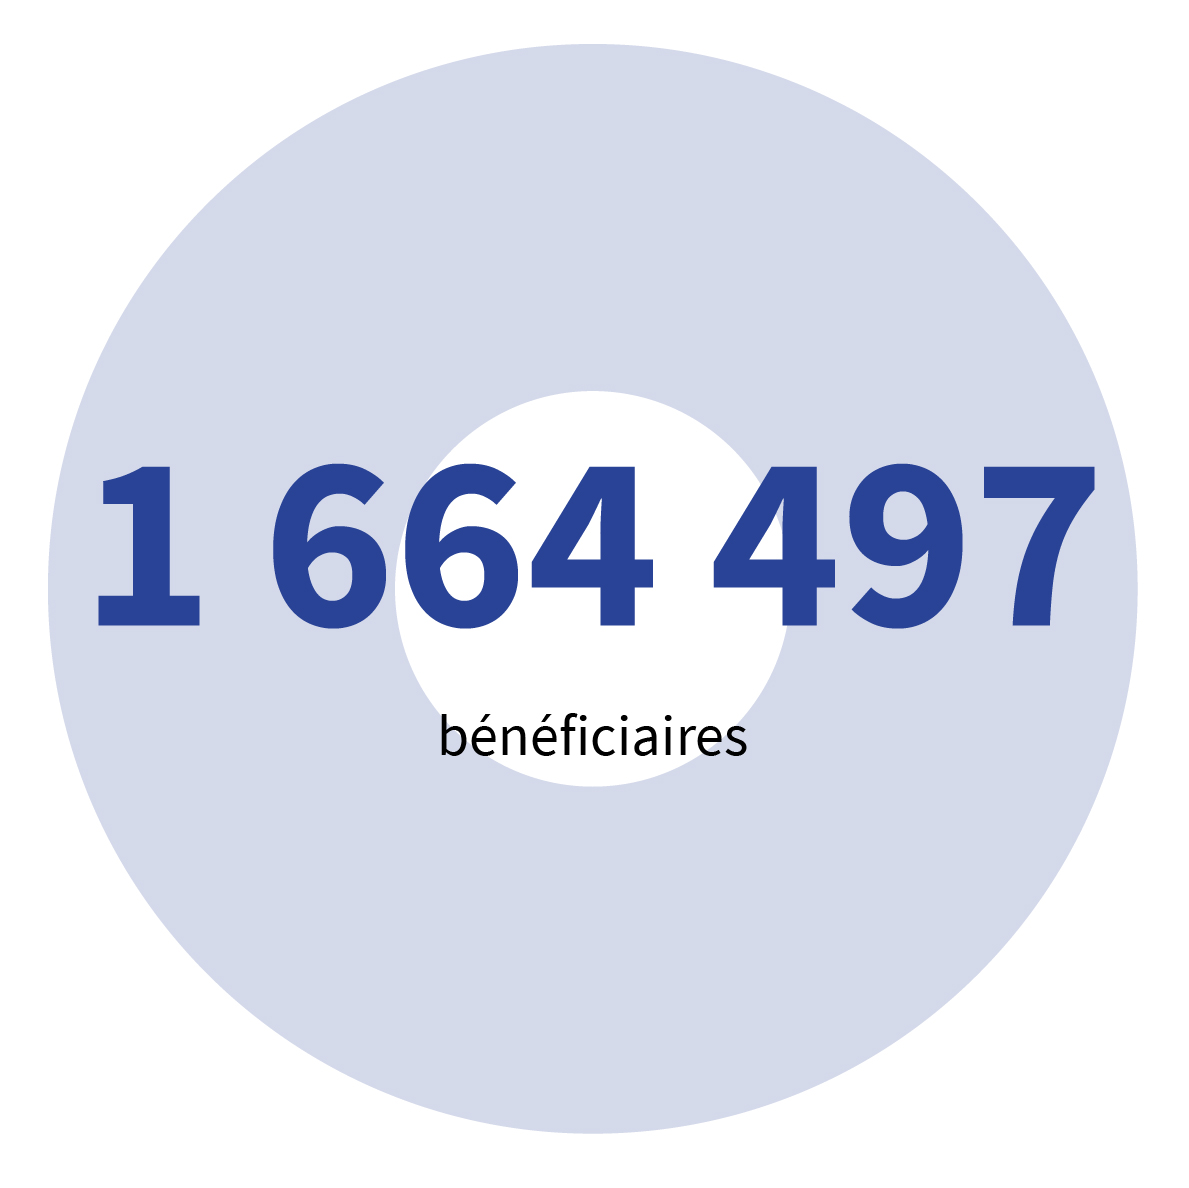 1 664 497 bénéficiaires